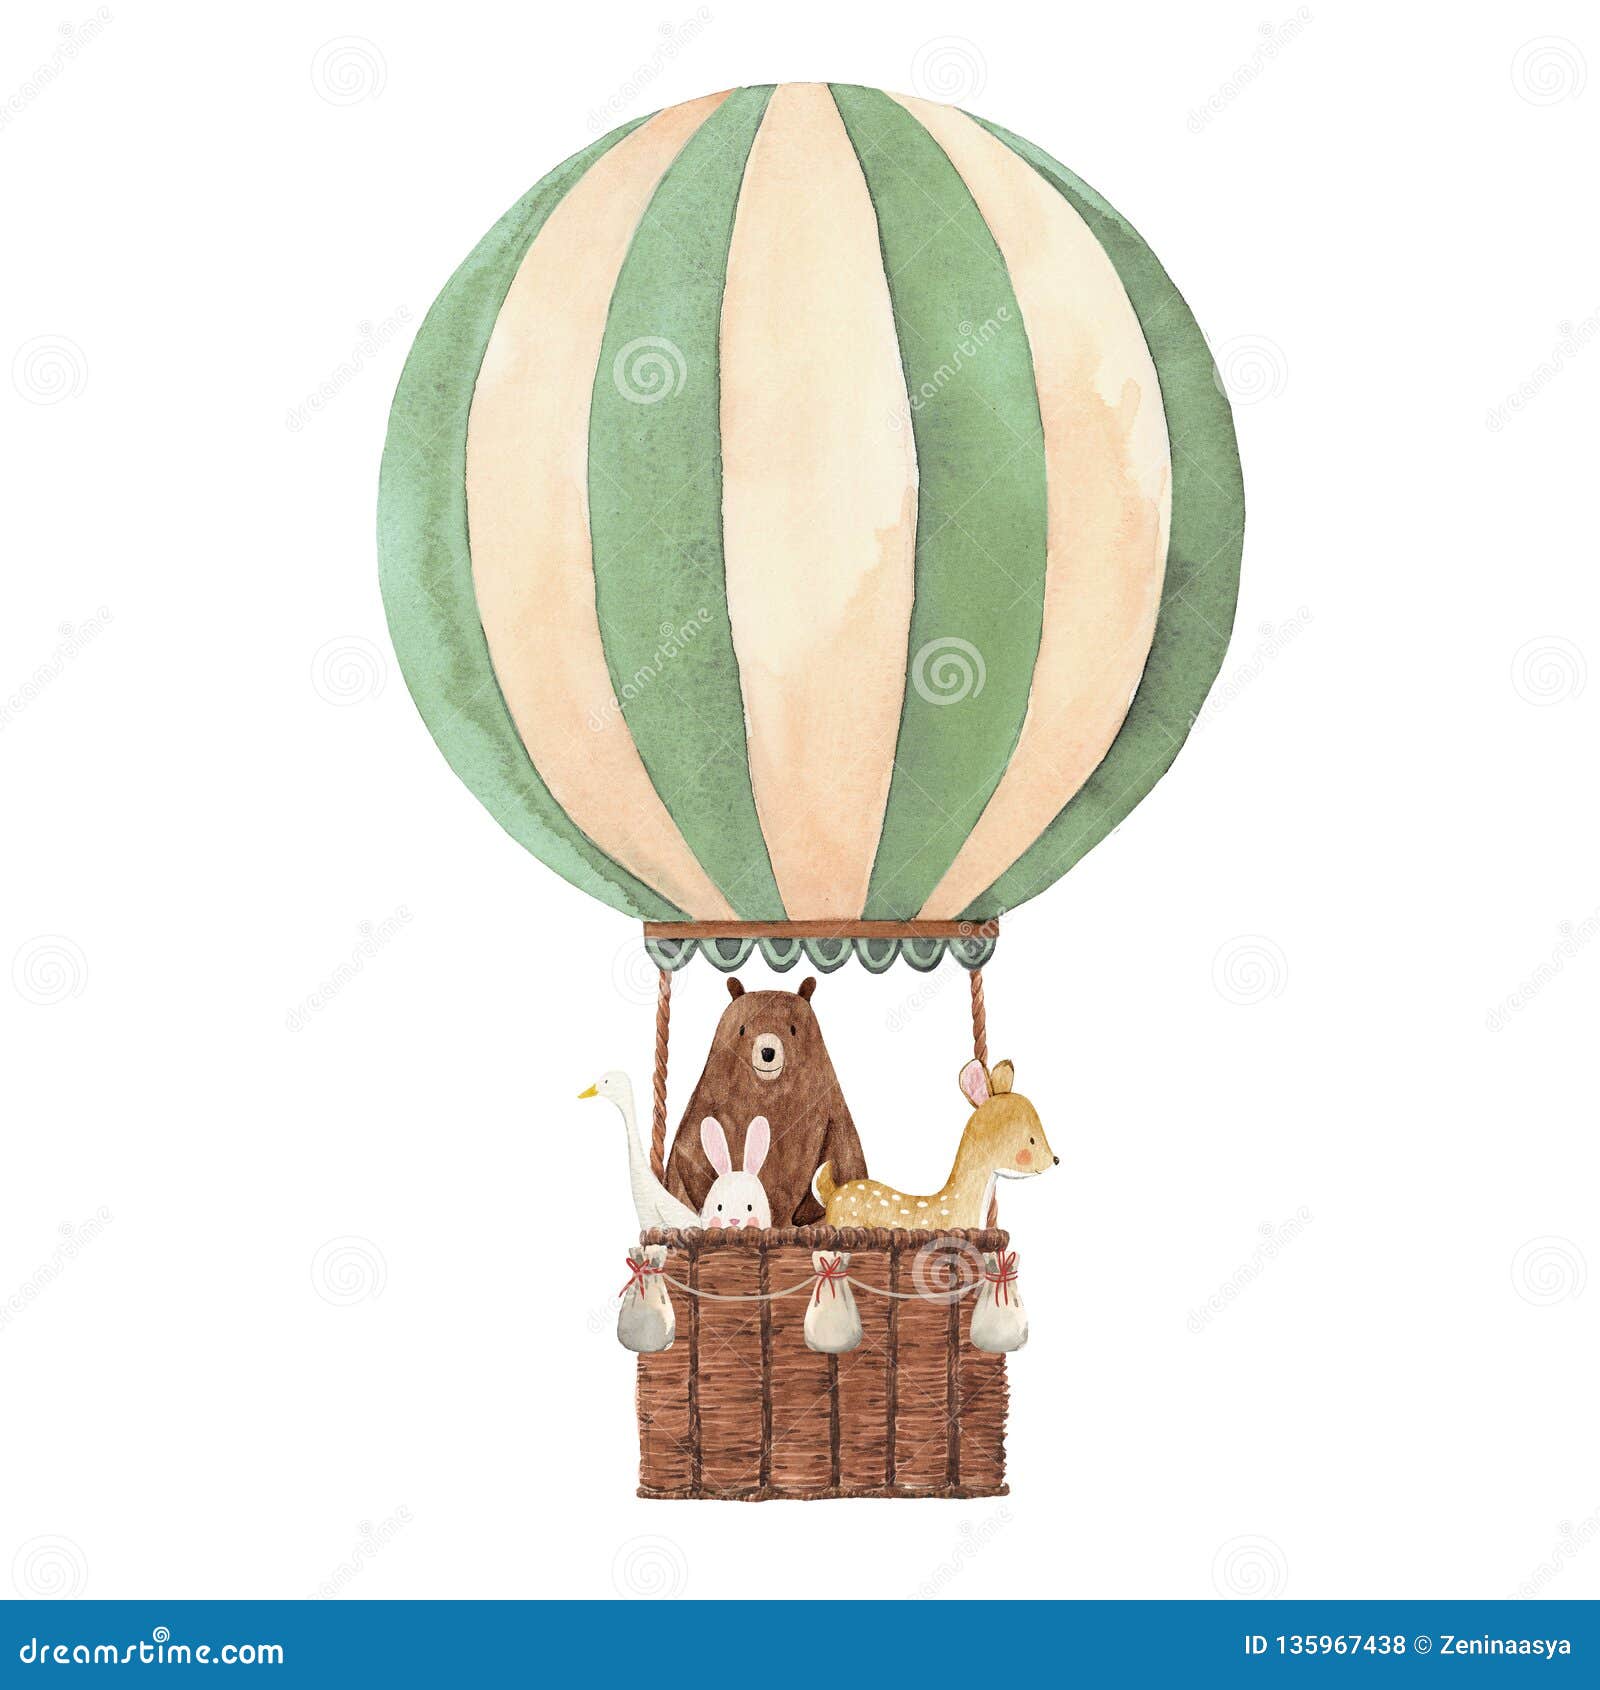 watercolor air baloon 